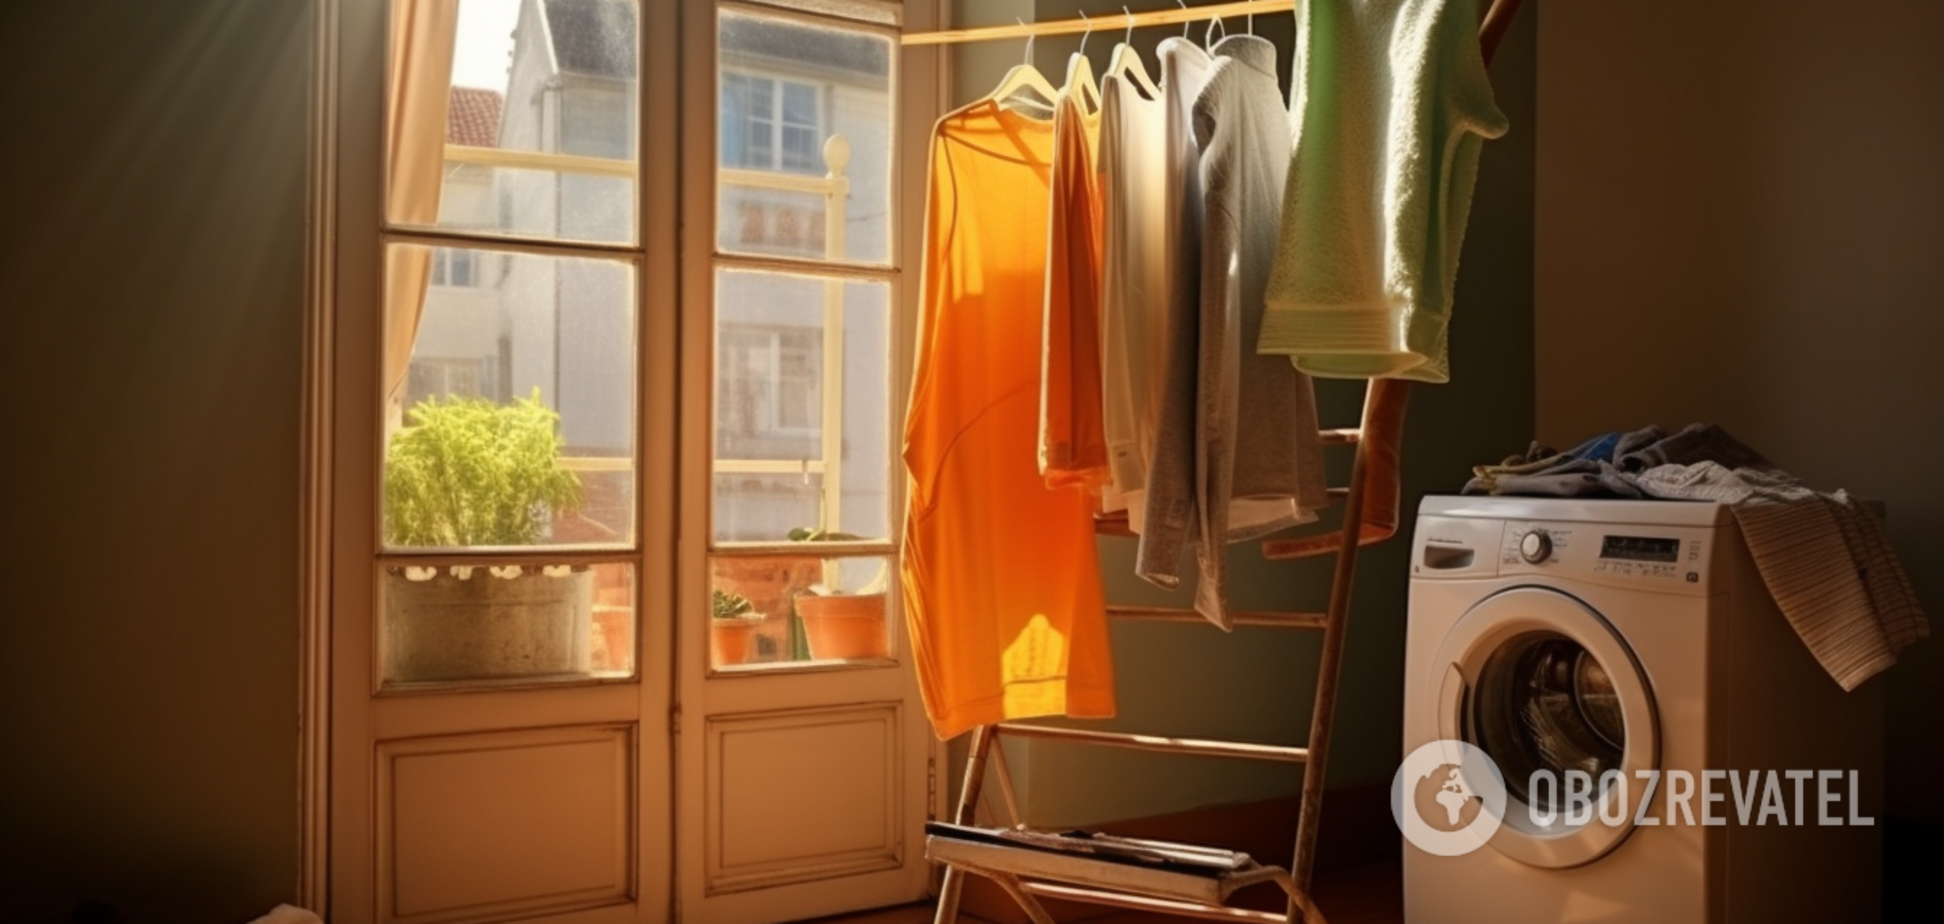 Як висушити одяг в квартирі без сушарки, аби він не тхнув вогкістю: ефективний метод 